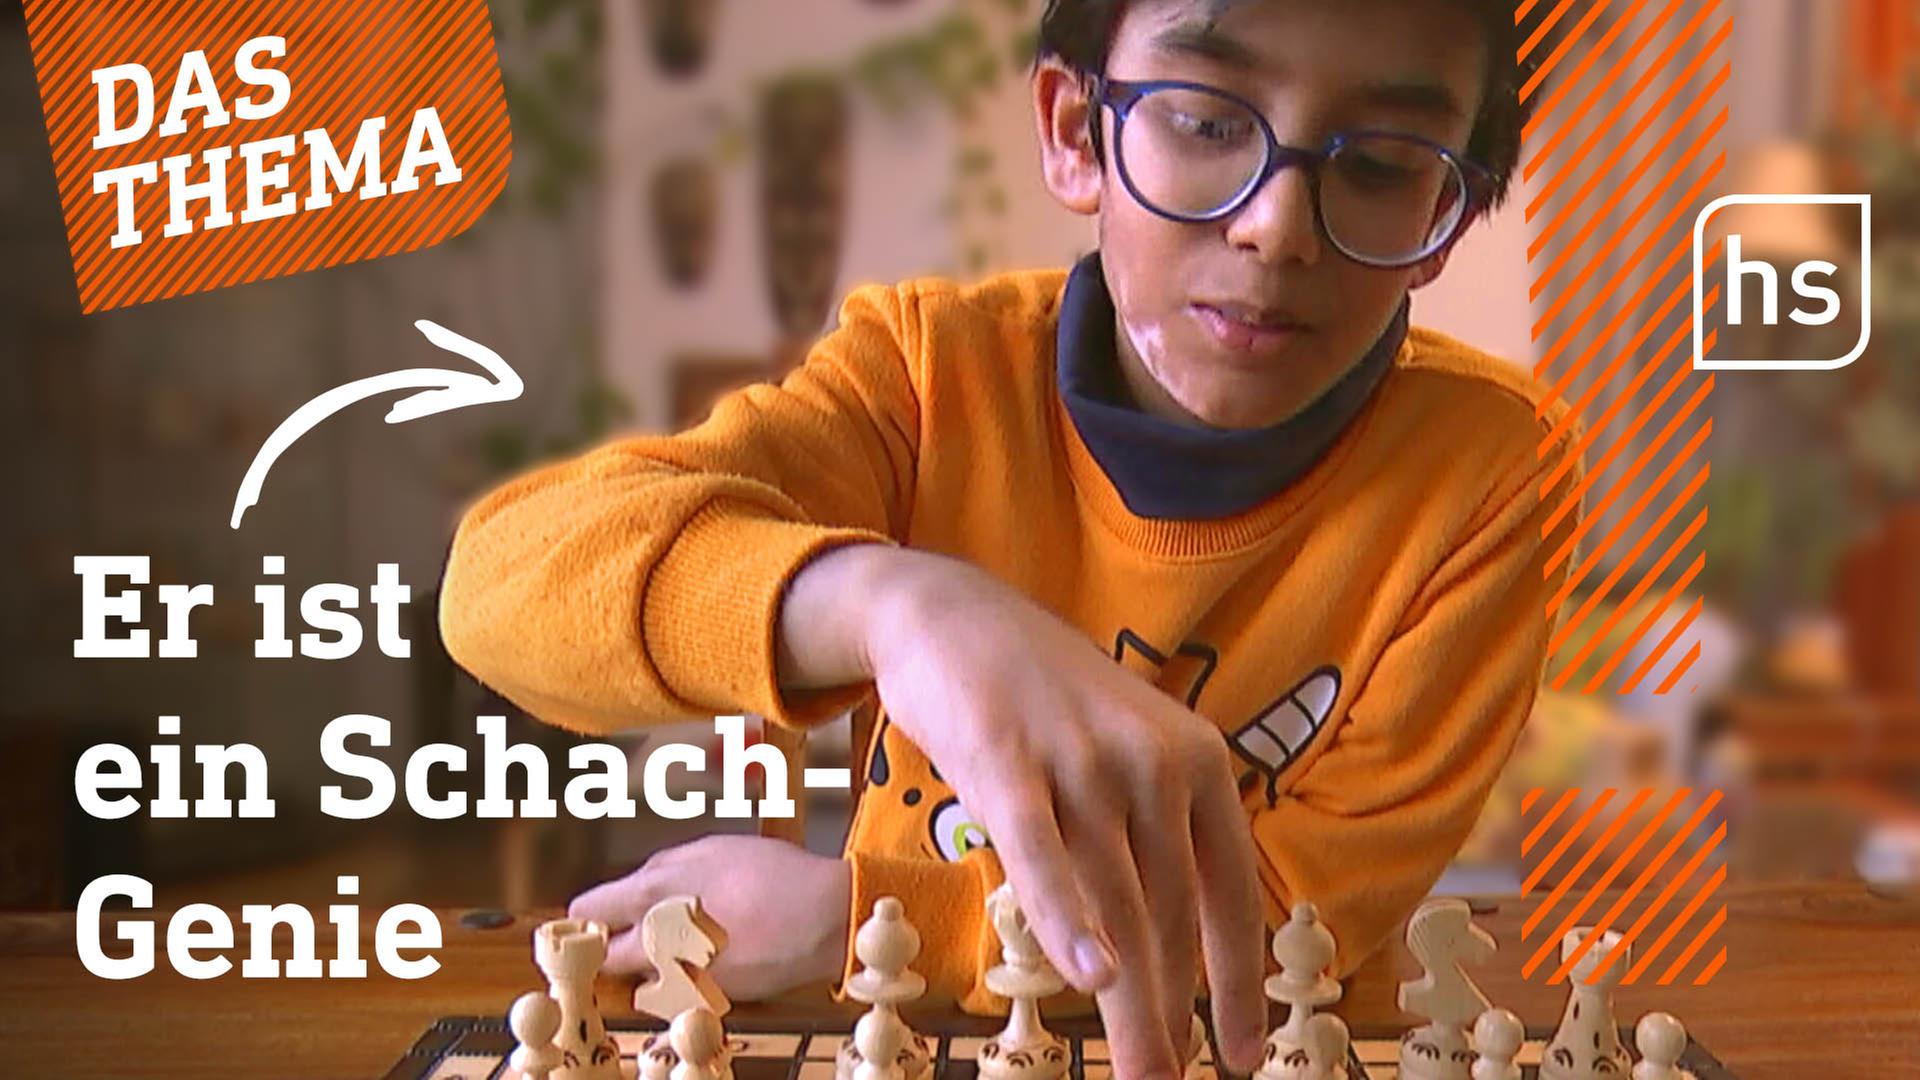 VIDEO  Schach macht schlau: Über 1.000 Grundschulkinder spielen